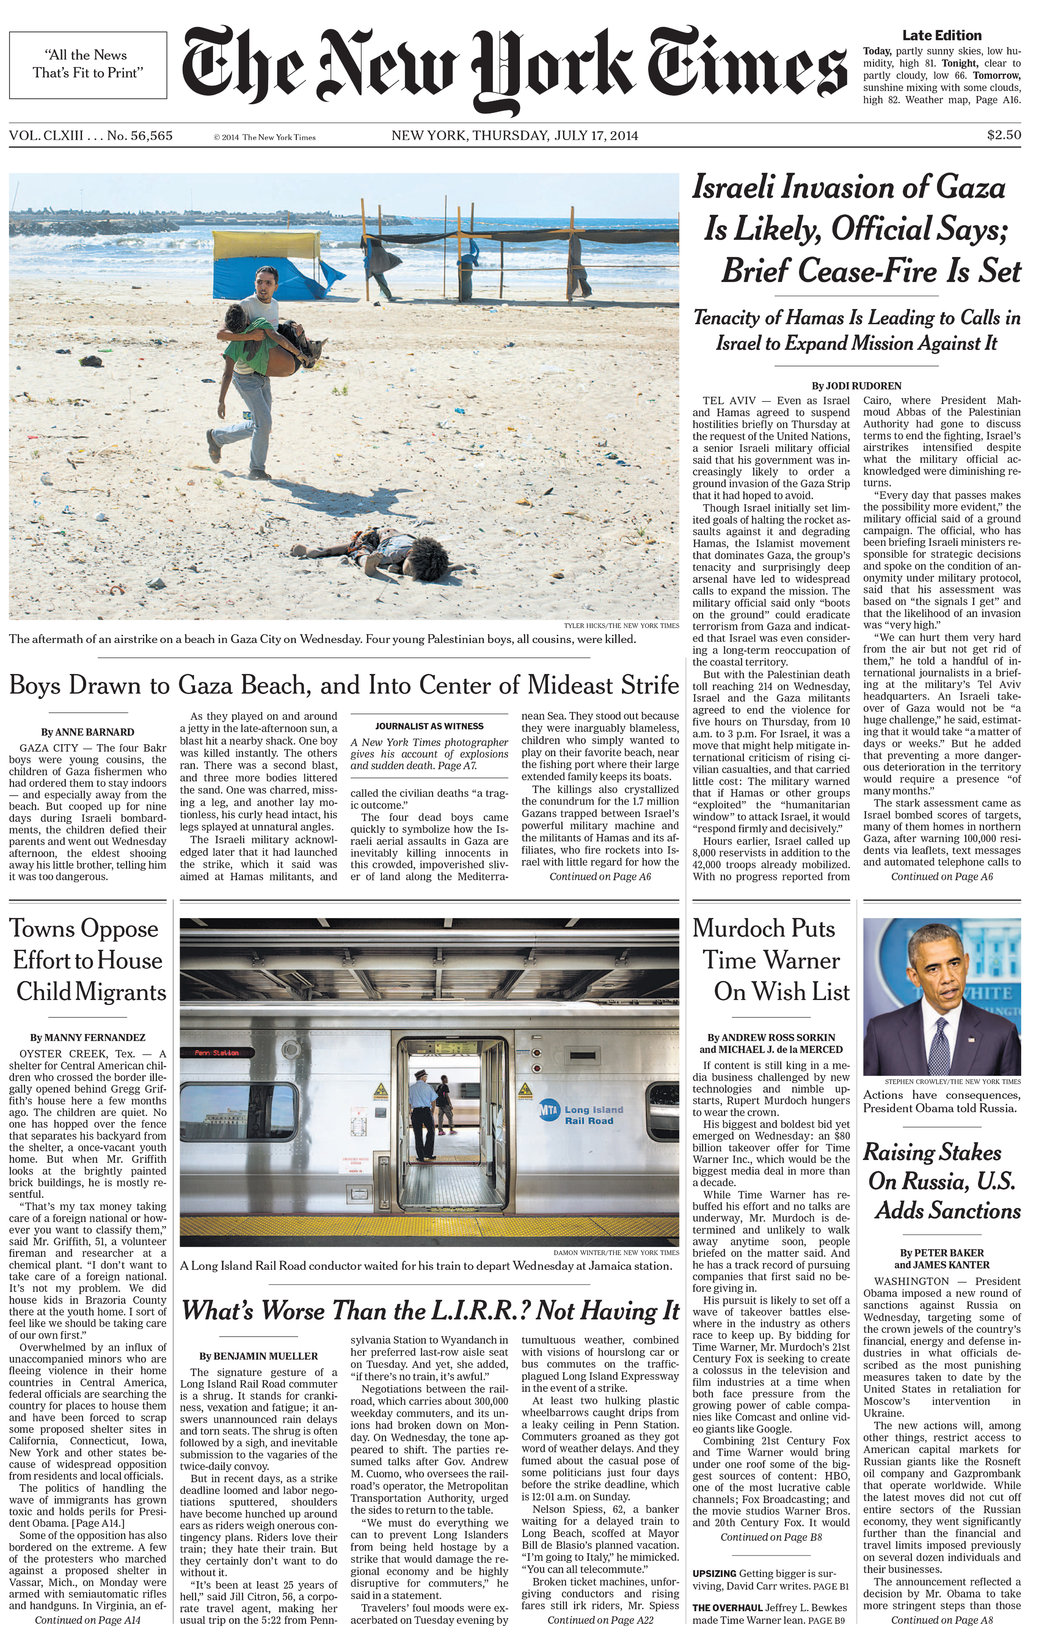 روز ۱۷ ژوئیه ۲۰۱۴ عکسی از عکاس اختصاصی نیویورک تایمز، تایلر هیکس منتشر شده‌است که شرایط پس از بمباران هوایی غزه را نمایش می‌دهد که در آن چهار کودک کشته‌شدند.